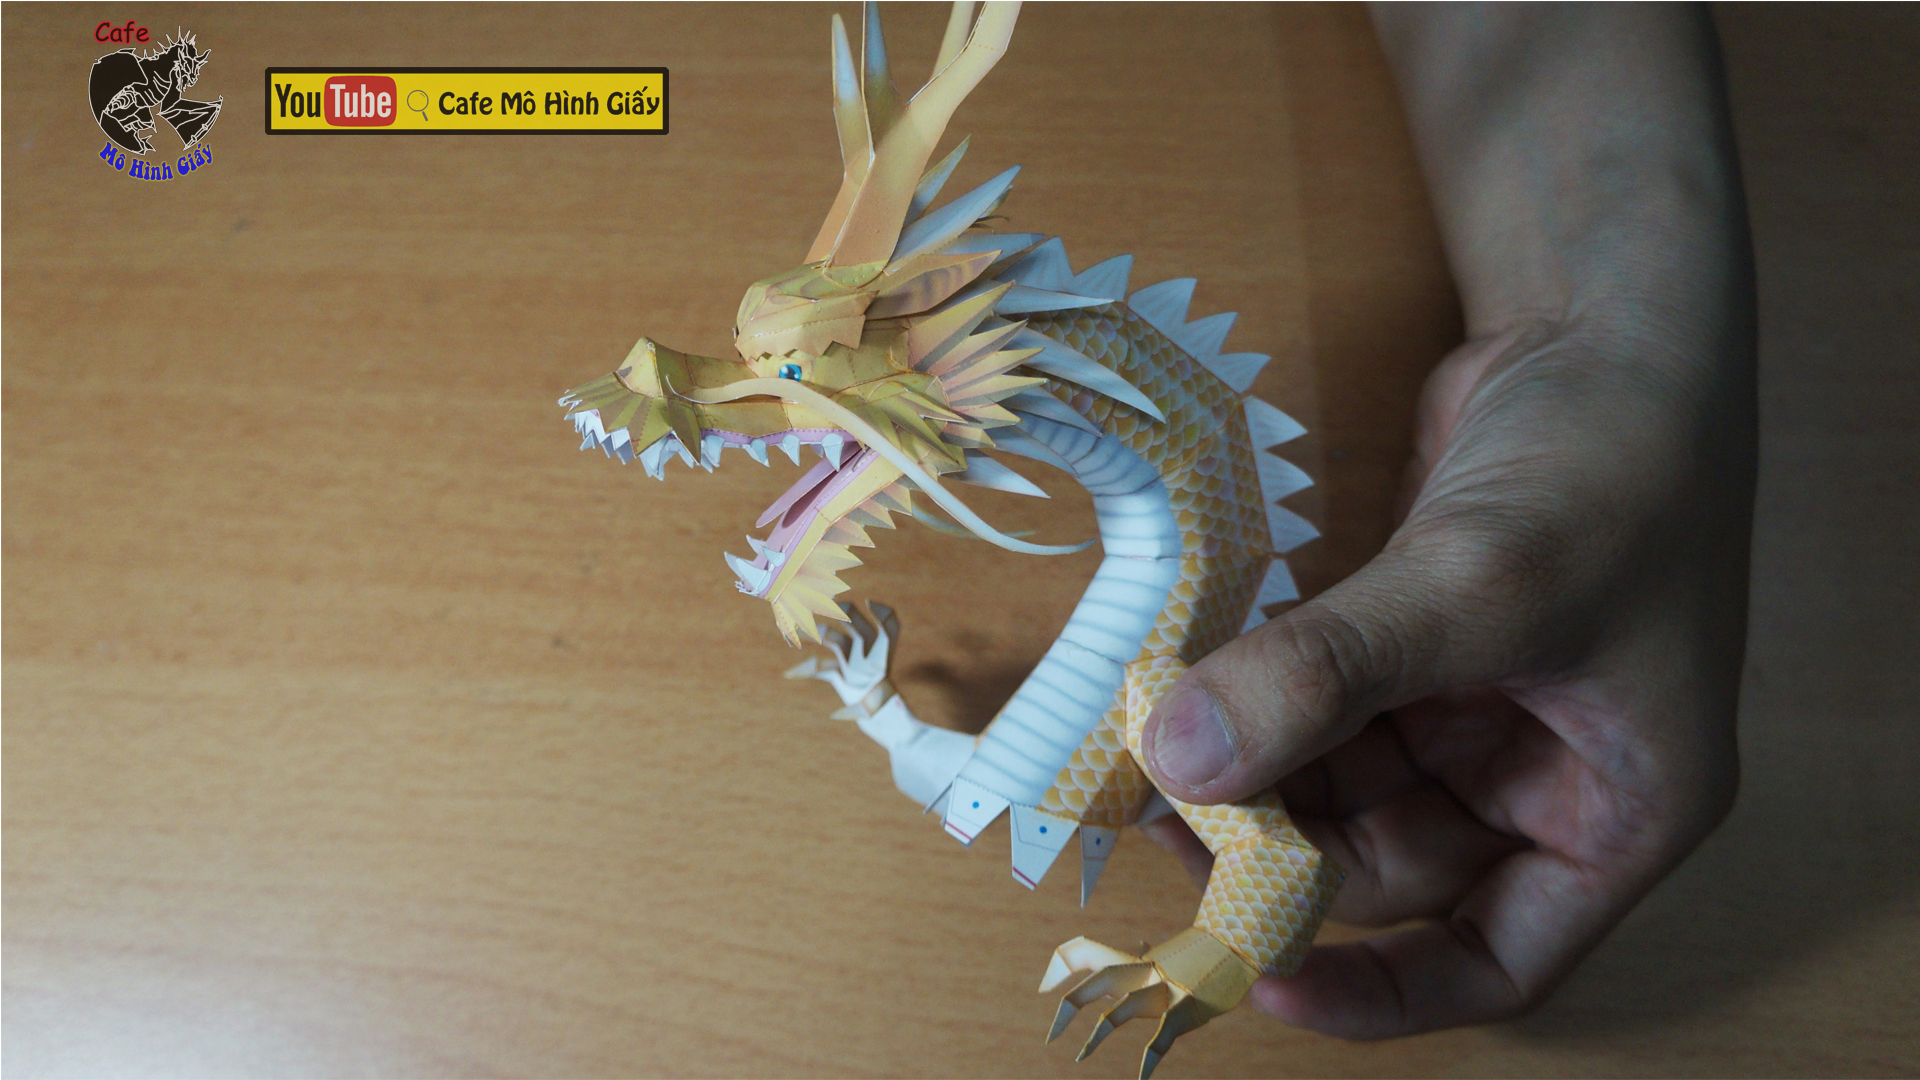 Mô hình Rồng Thần Dragon Ball  Figure Action Shenlong  Giá Sendo khuyến  mãi 435530đ  Mua ngay  Tư vấn mua sắm  tiêu dùng trực tuyến Bigomart